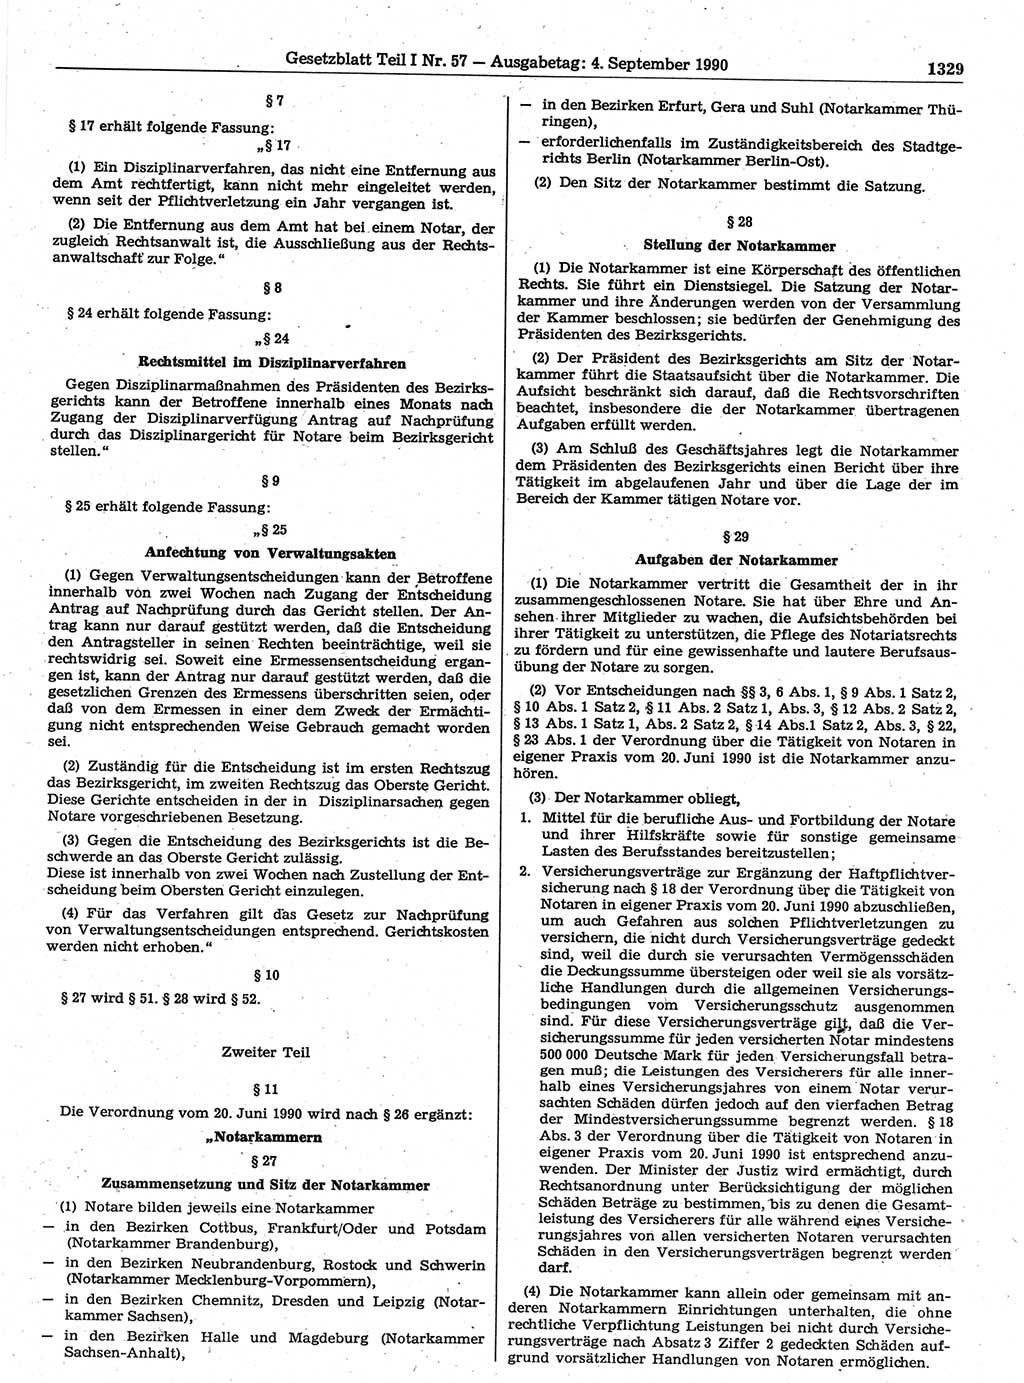 Gesetzblatt (GBl.) der Deutschen Demokratischen Republik (DDR) Teil Ⅰ 1990, Seite 1329 (GBl. DDR Ⅰ 1990, S. 1329)